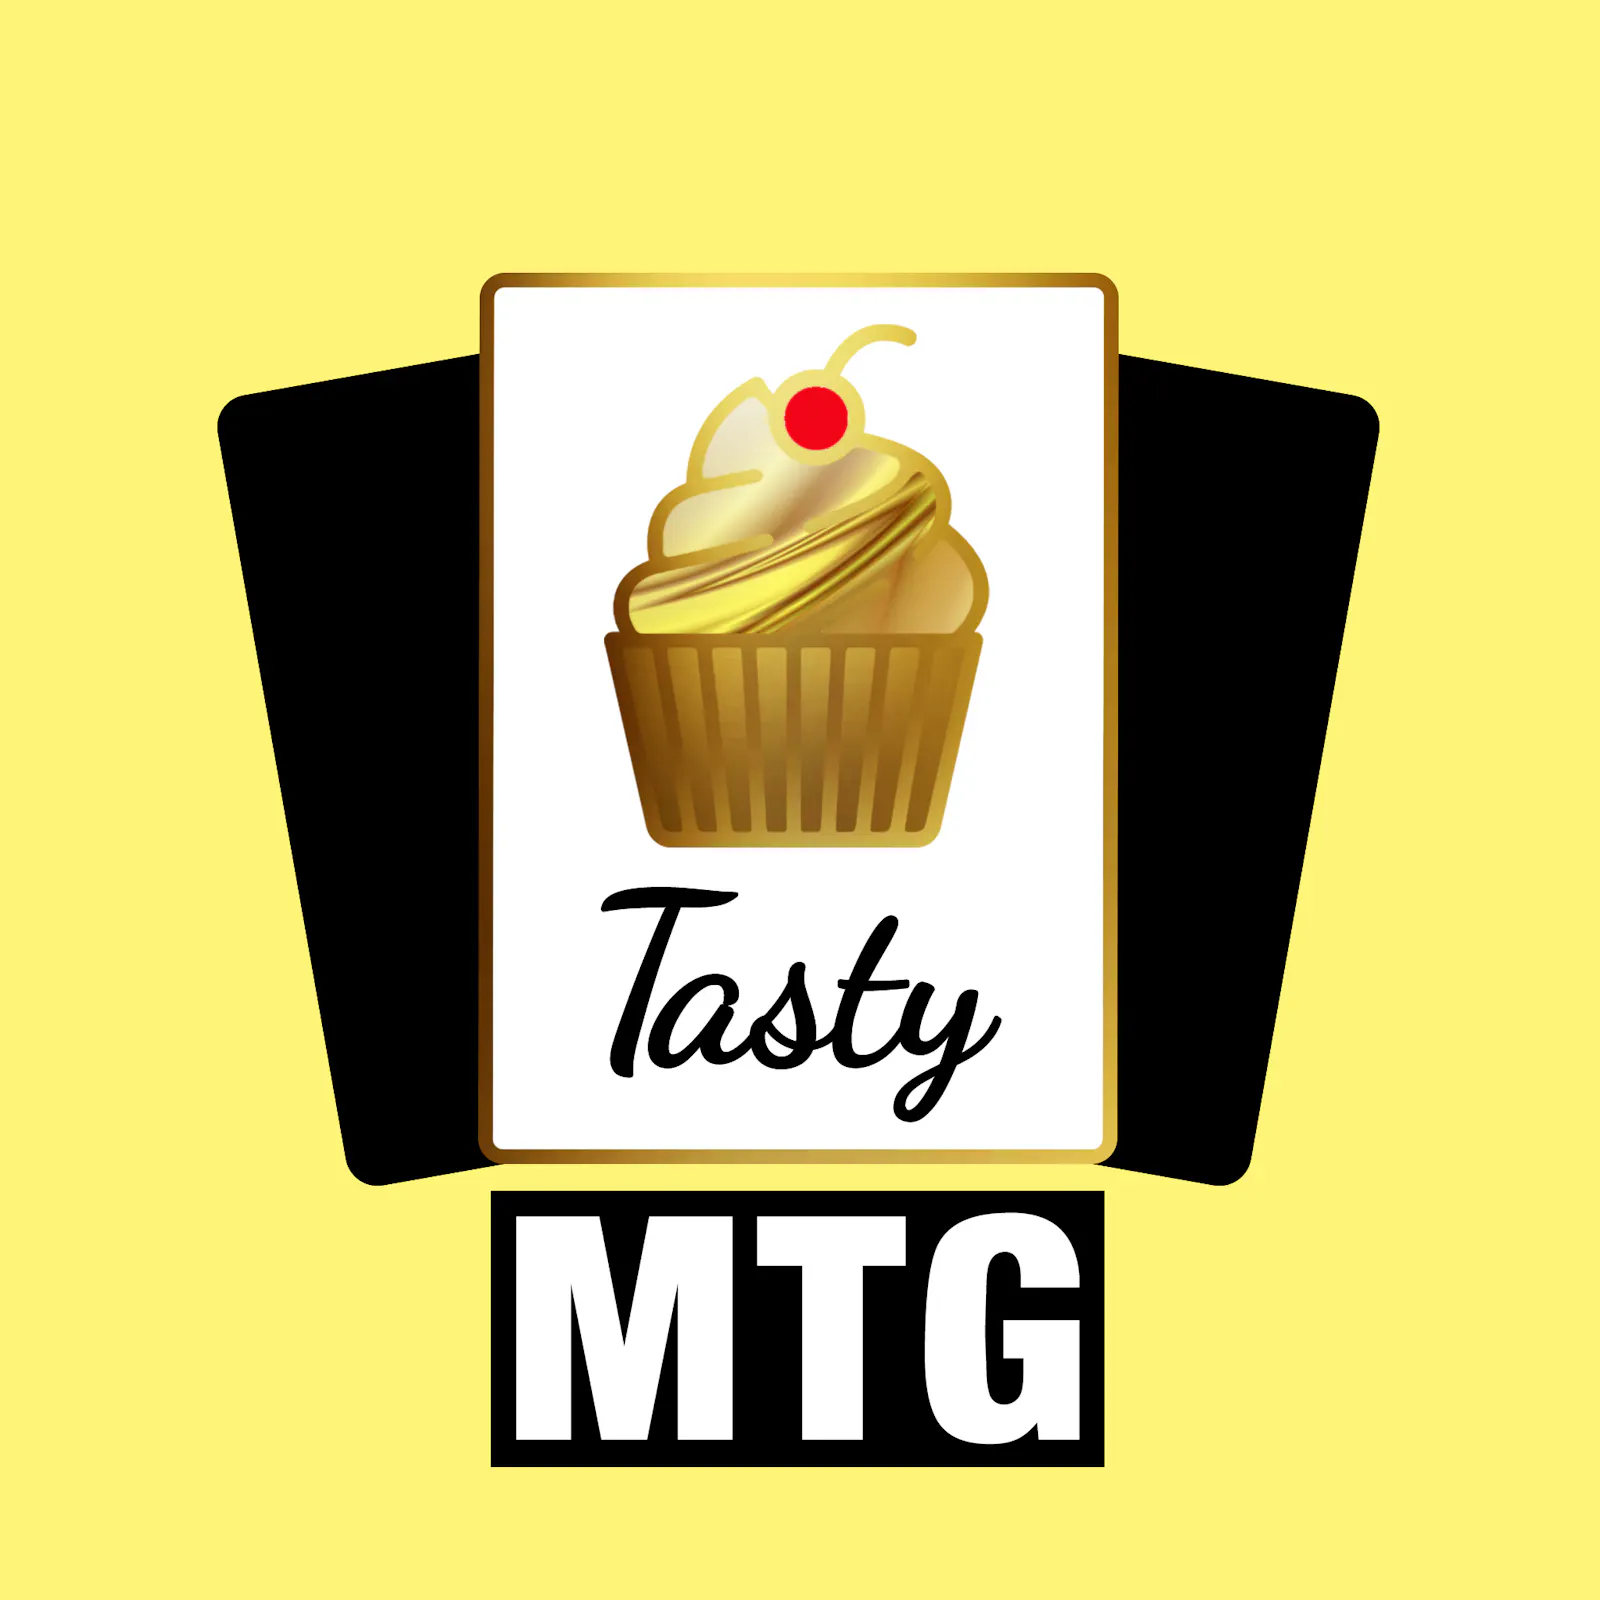 Das Cover zur aktuellen Folge: Der Taste-MTG-Muffin ist vergoldet